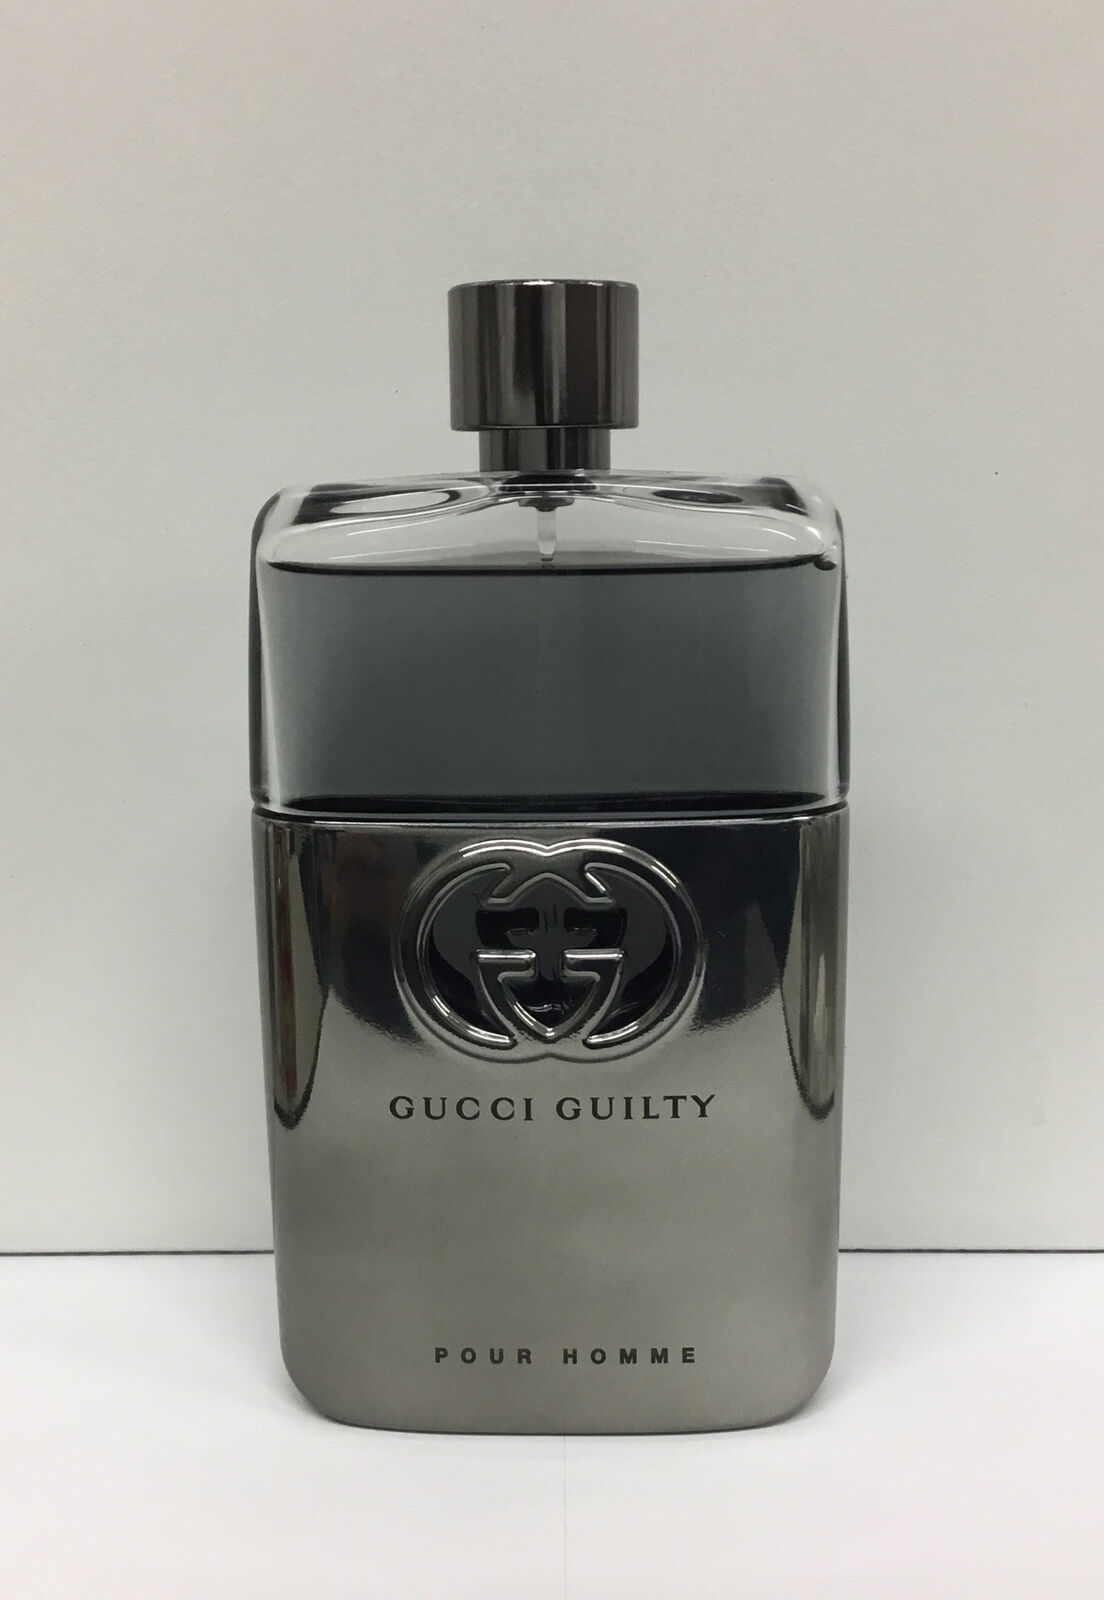 Gucci Guilty Pour Homme Eau De Toilette Spray 5.8 Fl Oz, As Pictured. 95%FULL